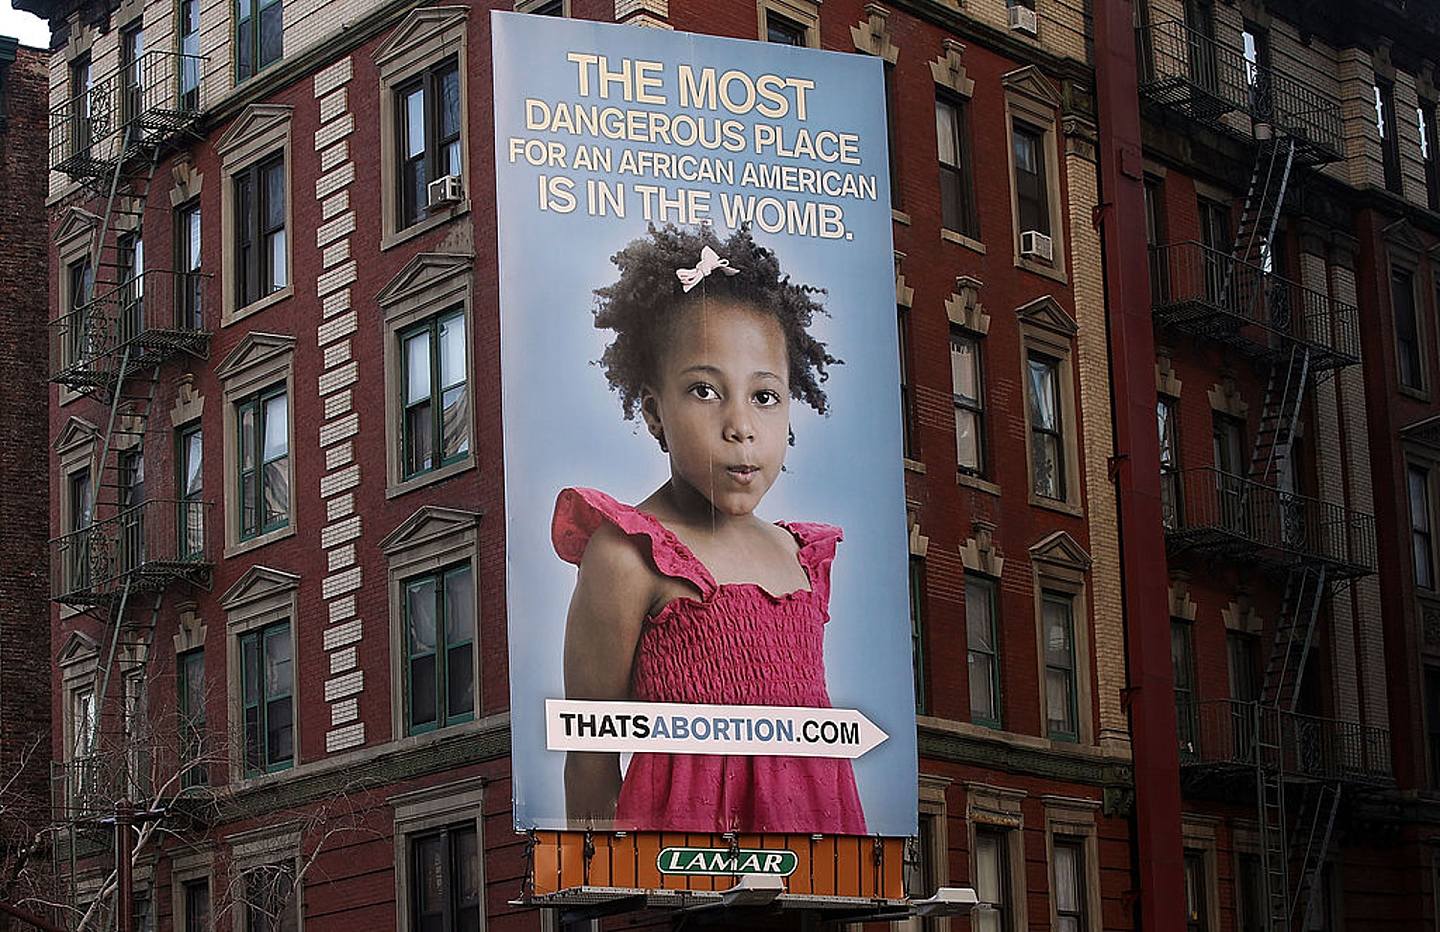 2011年2月24日，紐約市街頭出現一個引發爭議的反墮胎廣告牌，上面寫着「對非洲裔美國人來說最危險的地方是在子宮裏」。照片中六歲女孩的母親希望總部設在德克薩斯州的反墮胎組織「生命至上」（Life Always）將該廣告牌取下。(Getty)